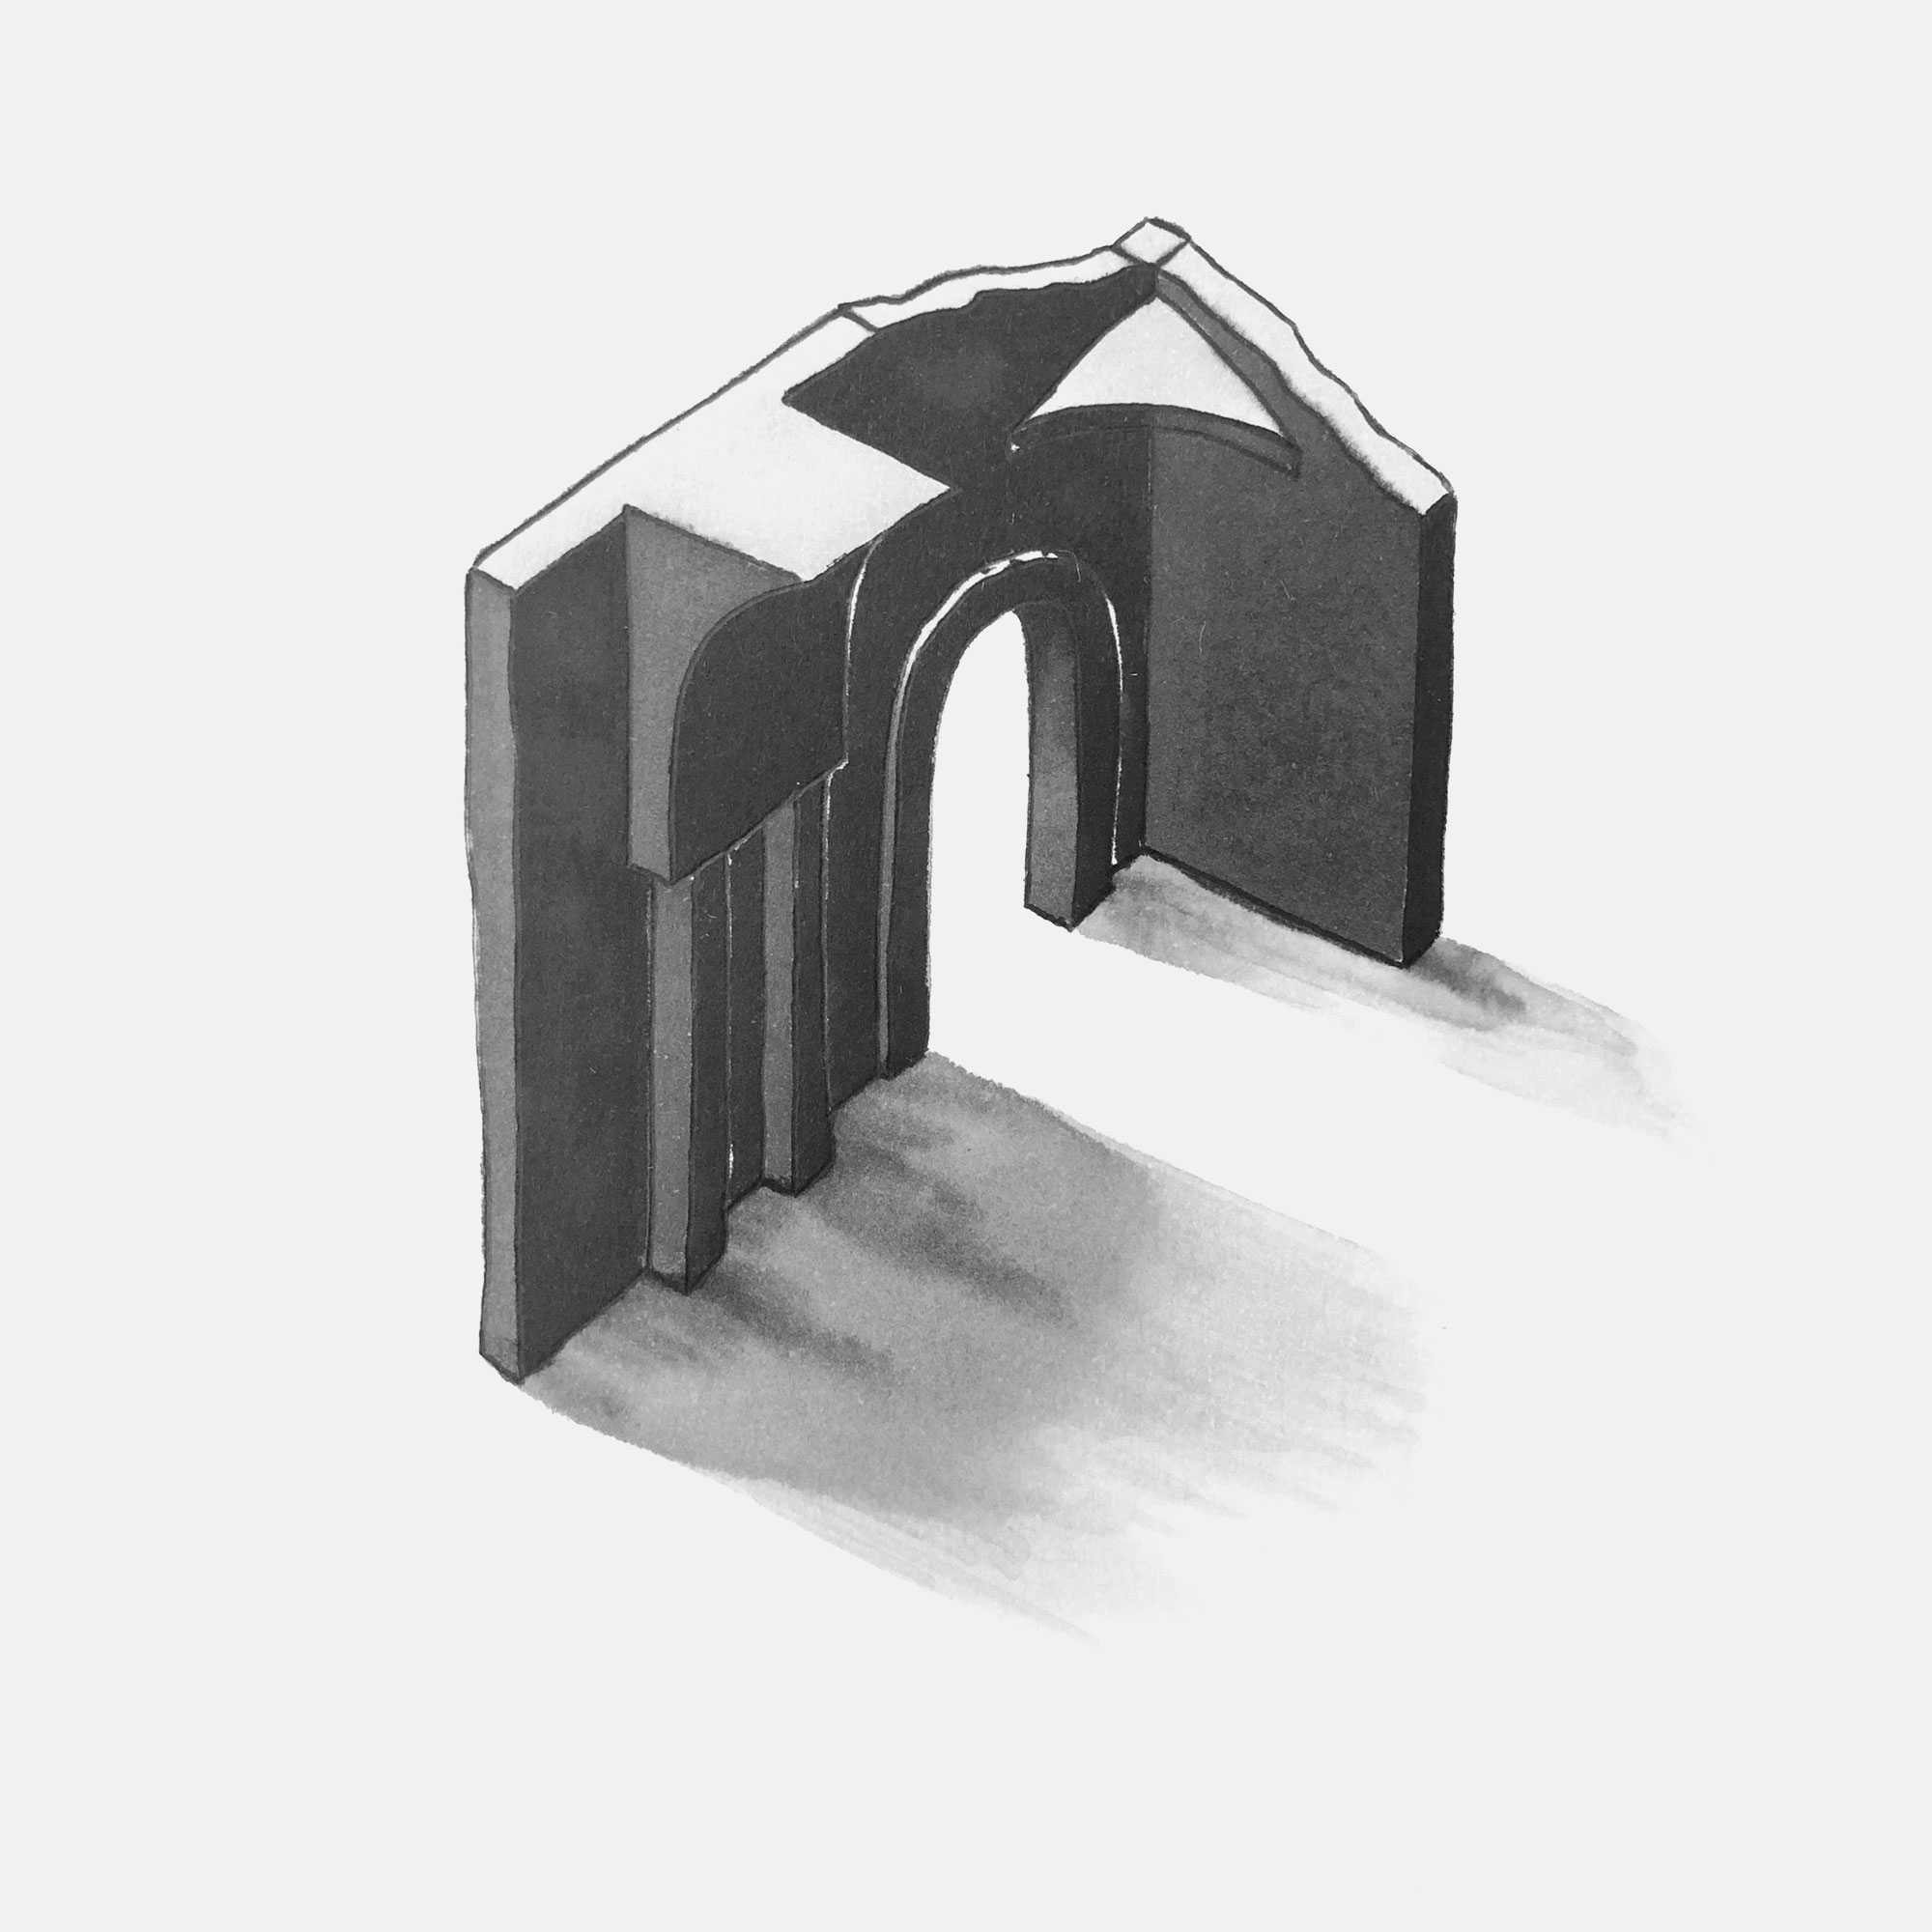 mattia listowski art décoration architecture design dessin réversible encre feutre à alcool bic noir et blanc objet oeuvre édition limitée signée paris bruxelles 2021